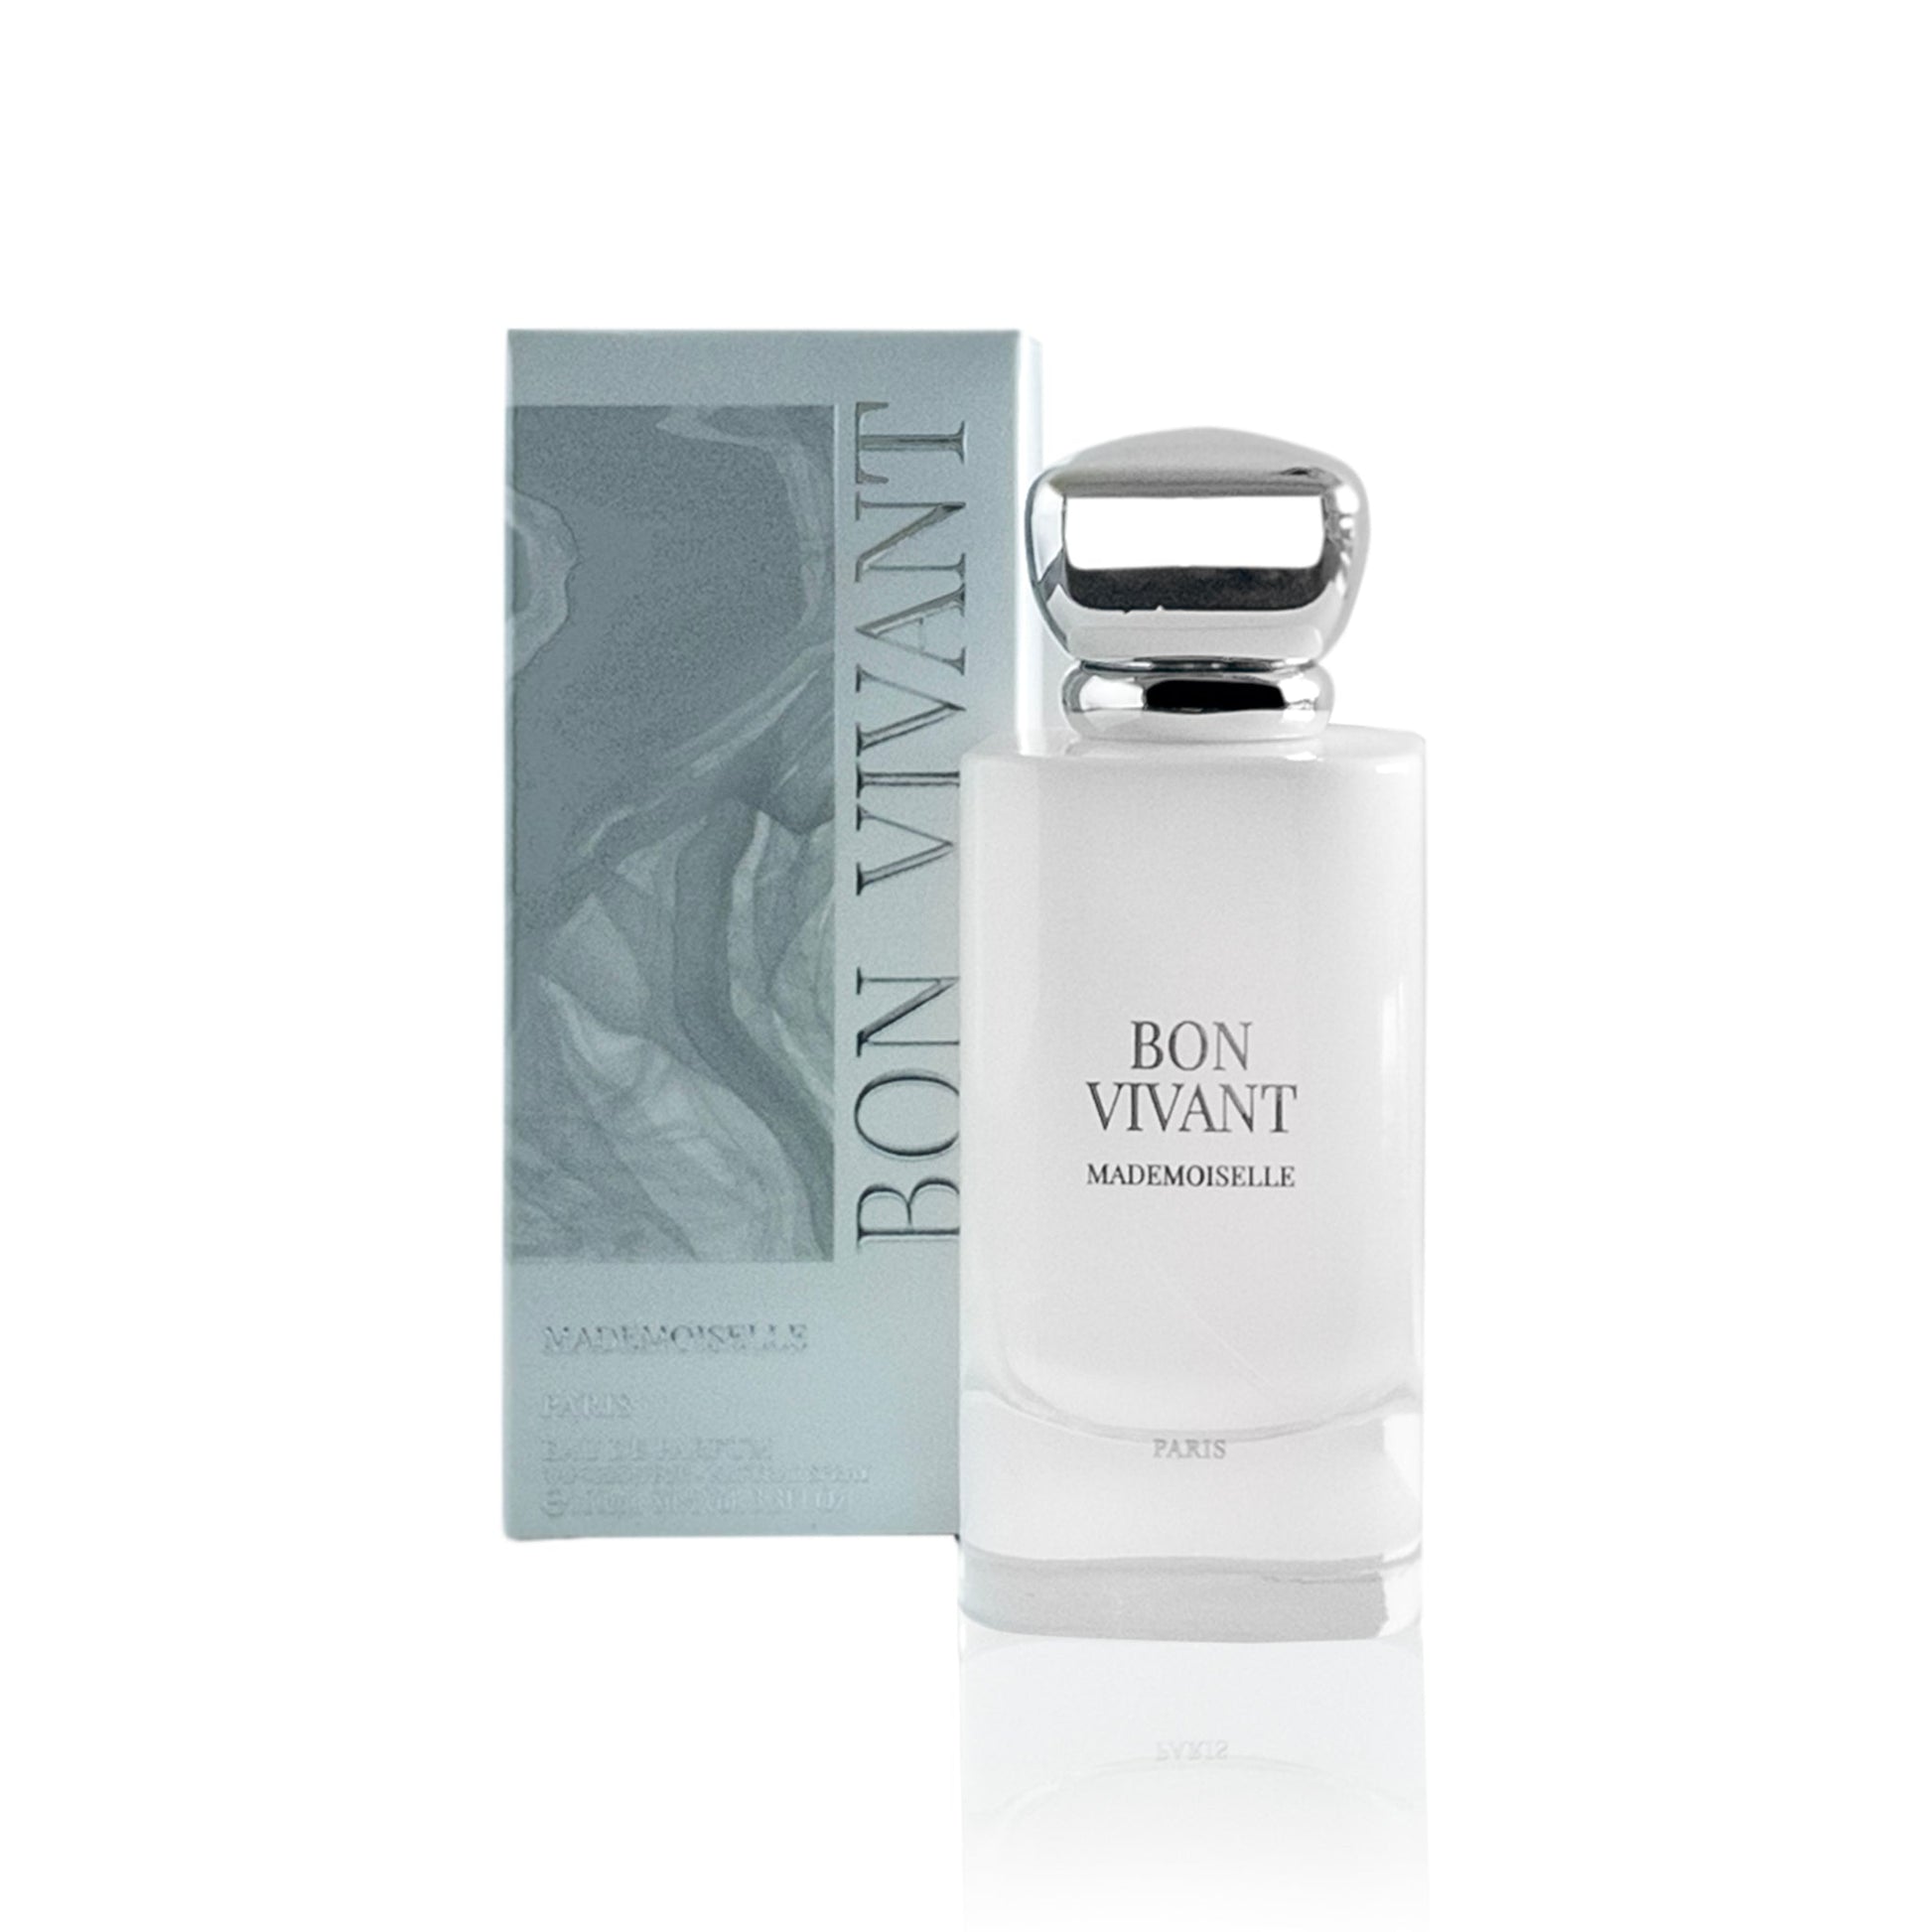 Bon Vivant Mademoiselle Eau de Parfum Spray for Women, Product image 1